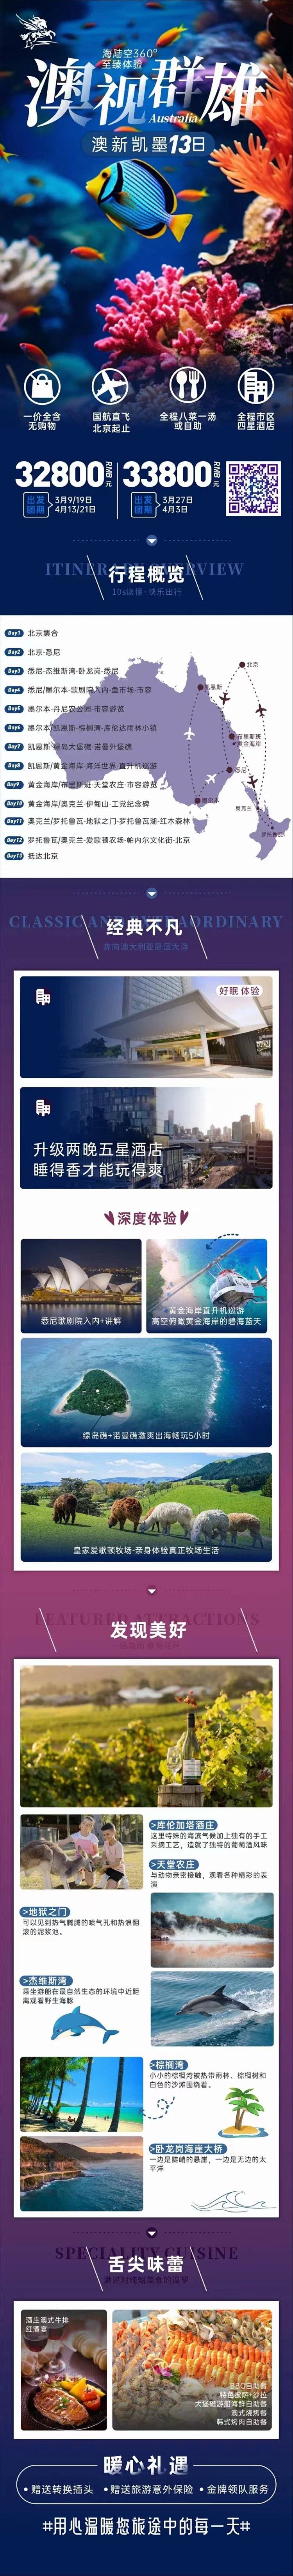 澳大利亚旅游：北京出发去到澳大利亚新西兰凯恩斯墨尔本 13 日旅游团报名优惠 大堡礁黄金海